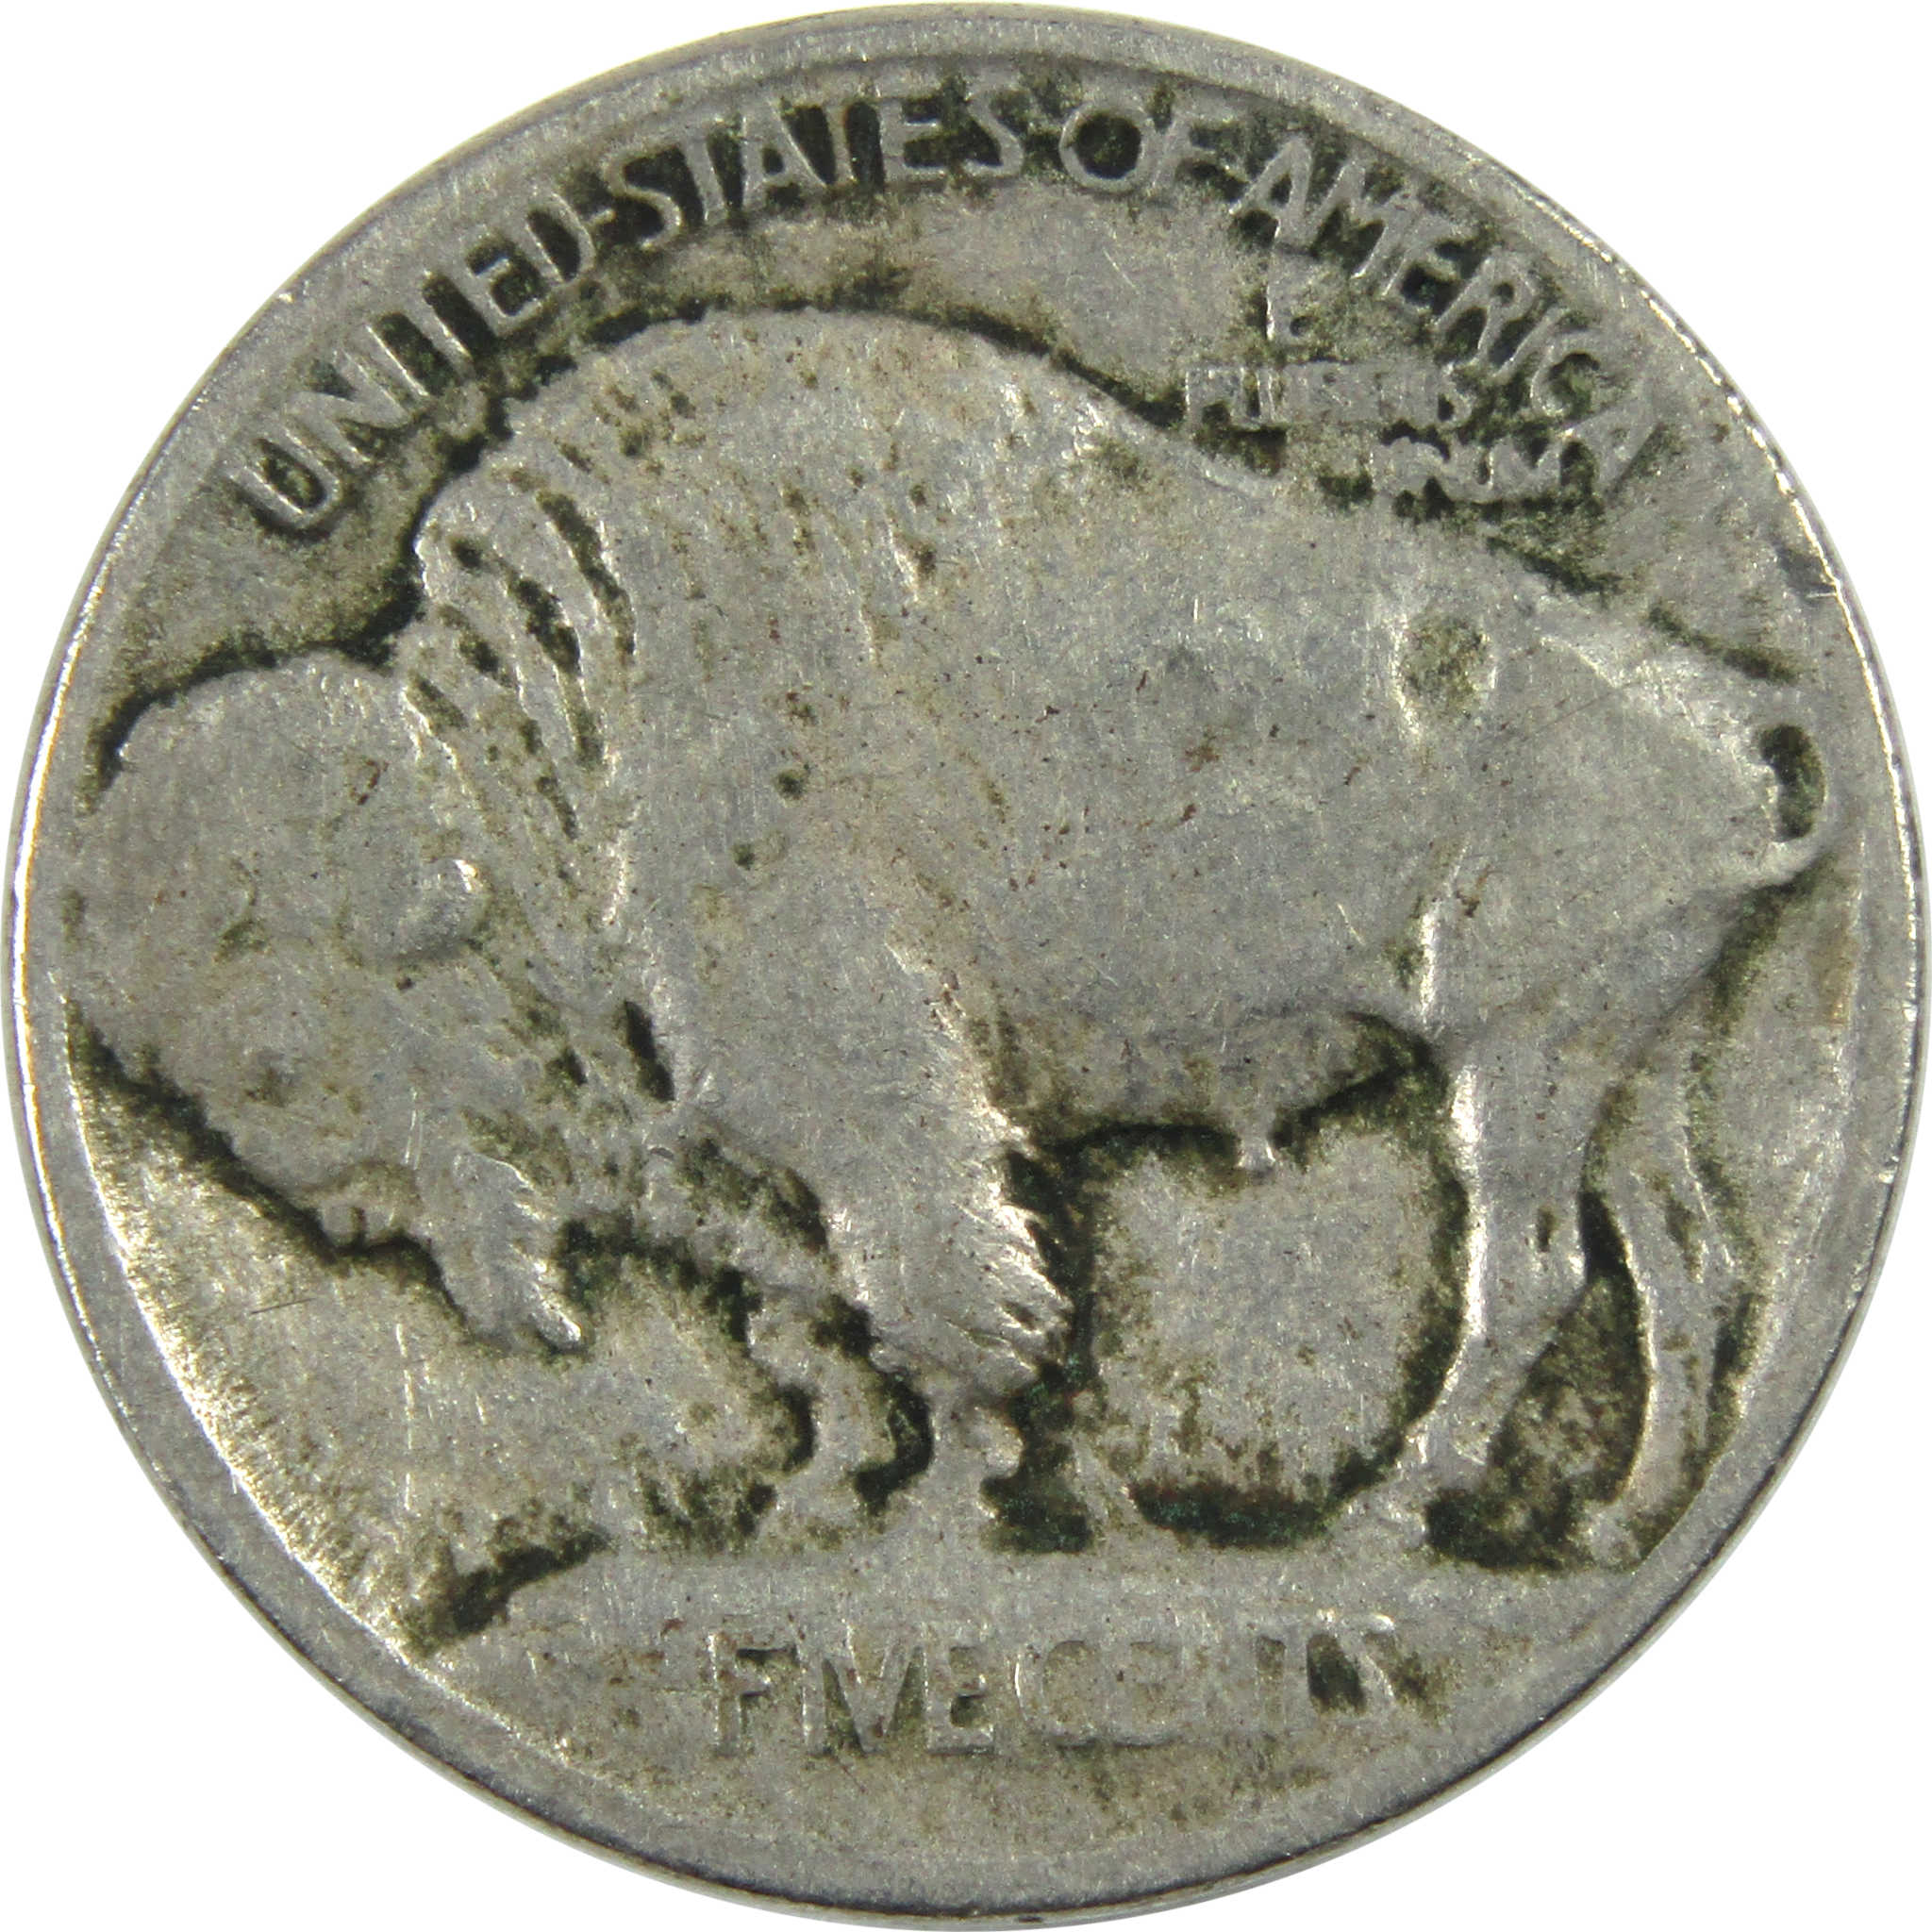 1913 Type 1 Indian Head Buffalo Nickel VG Very Good 5c Coin SKU:I12992